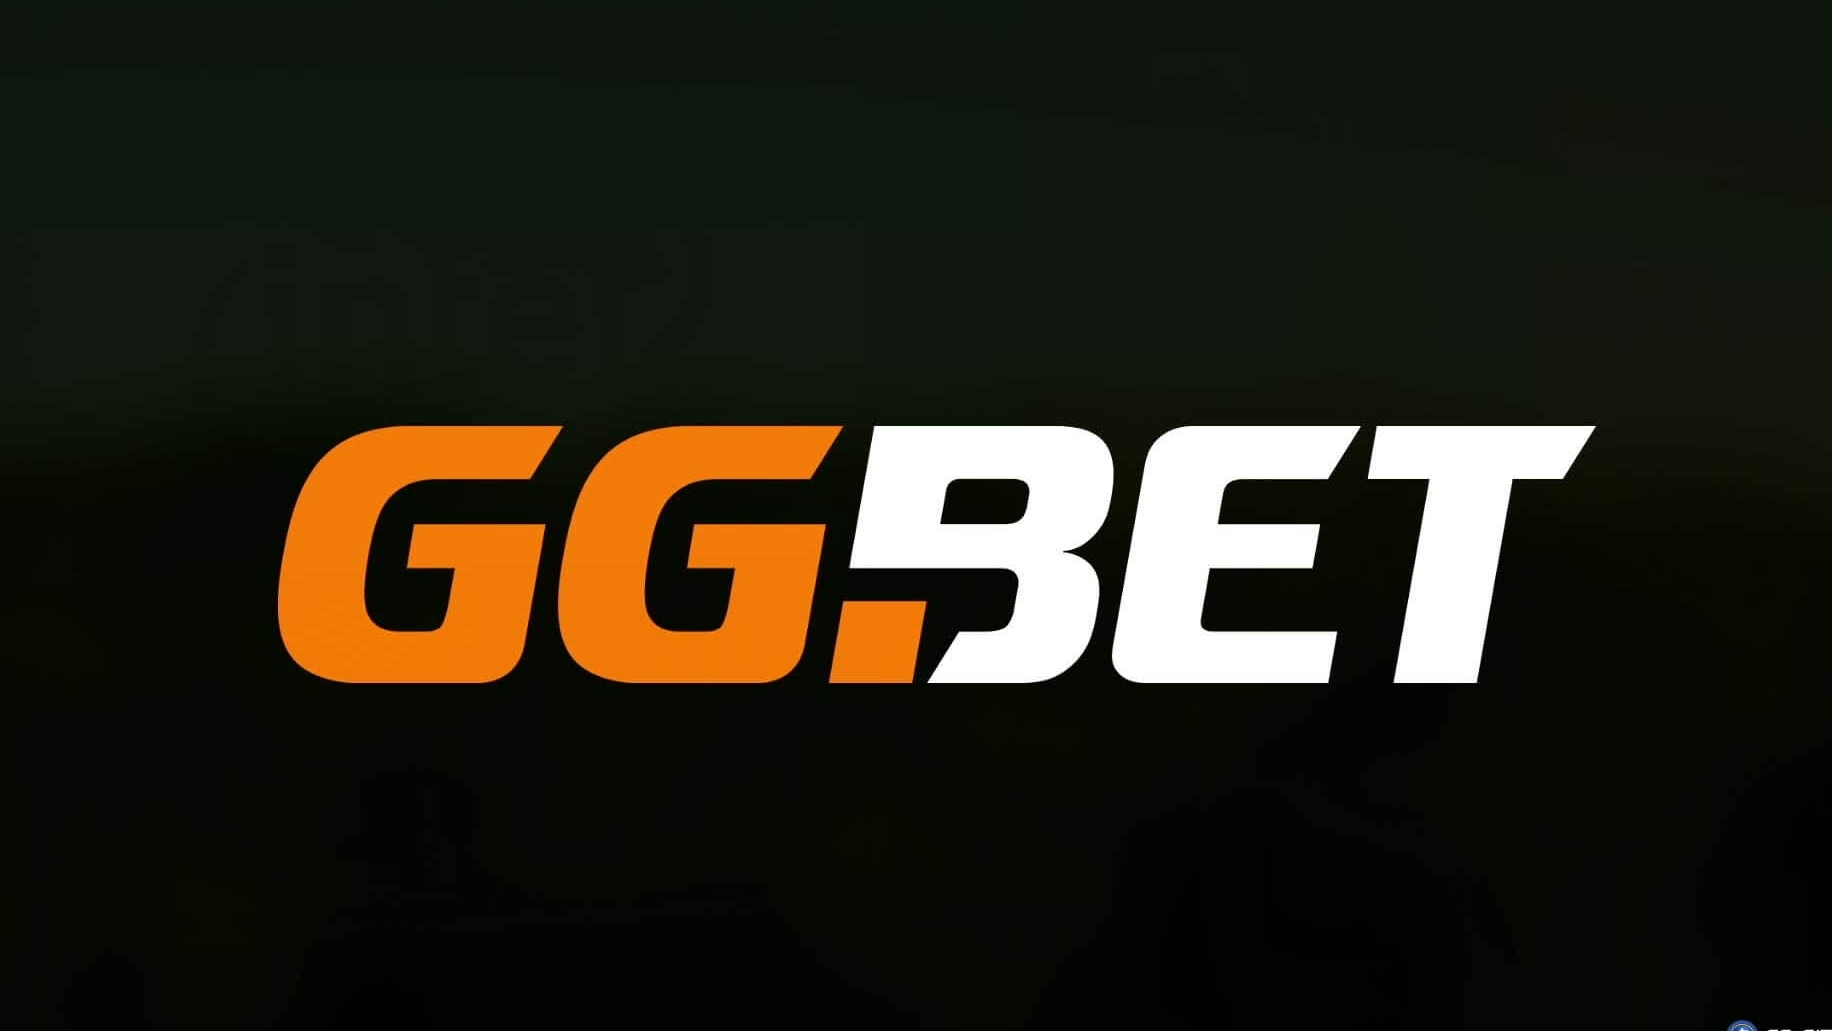 50 фриспинов за регистрацию в GGbet - отличный способ начать игру в онлайн-казино